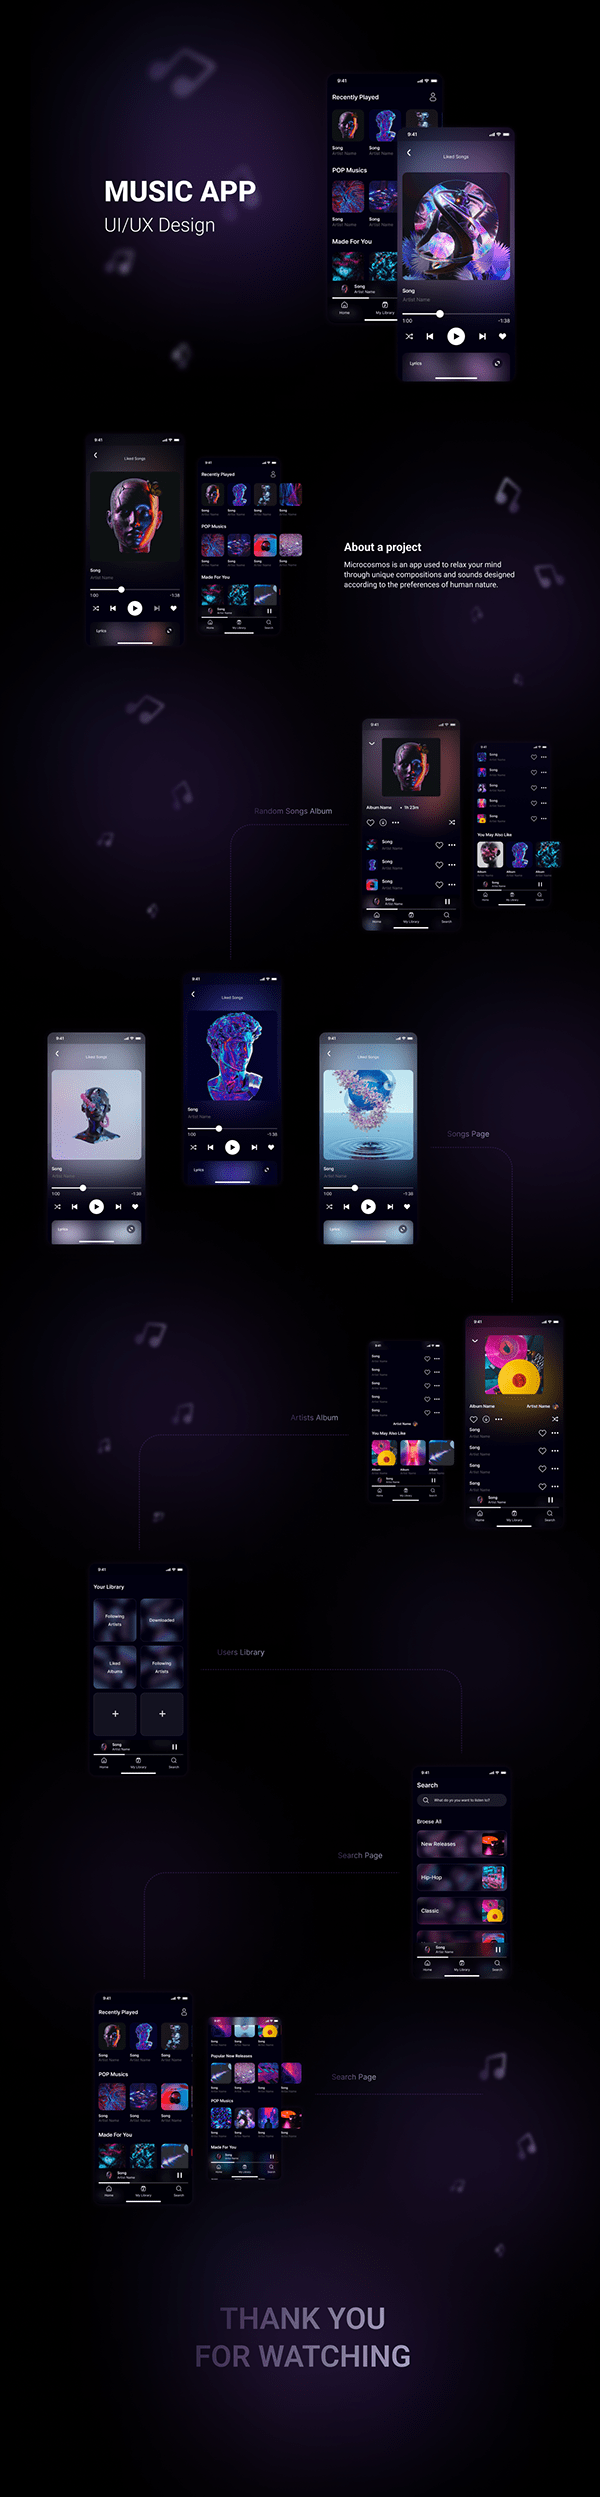 Music App Design - UI/UX Design